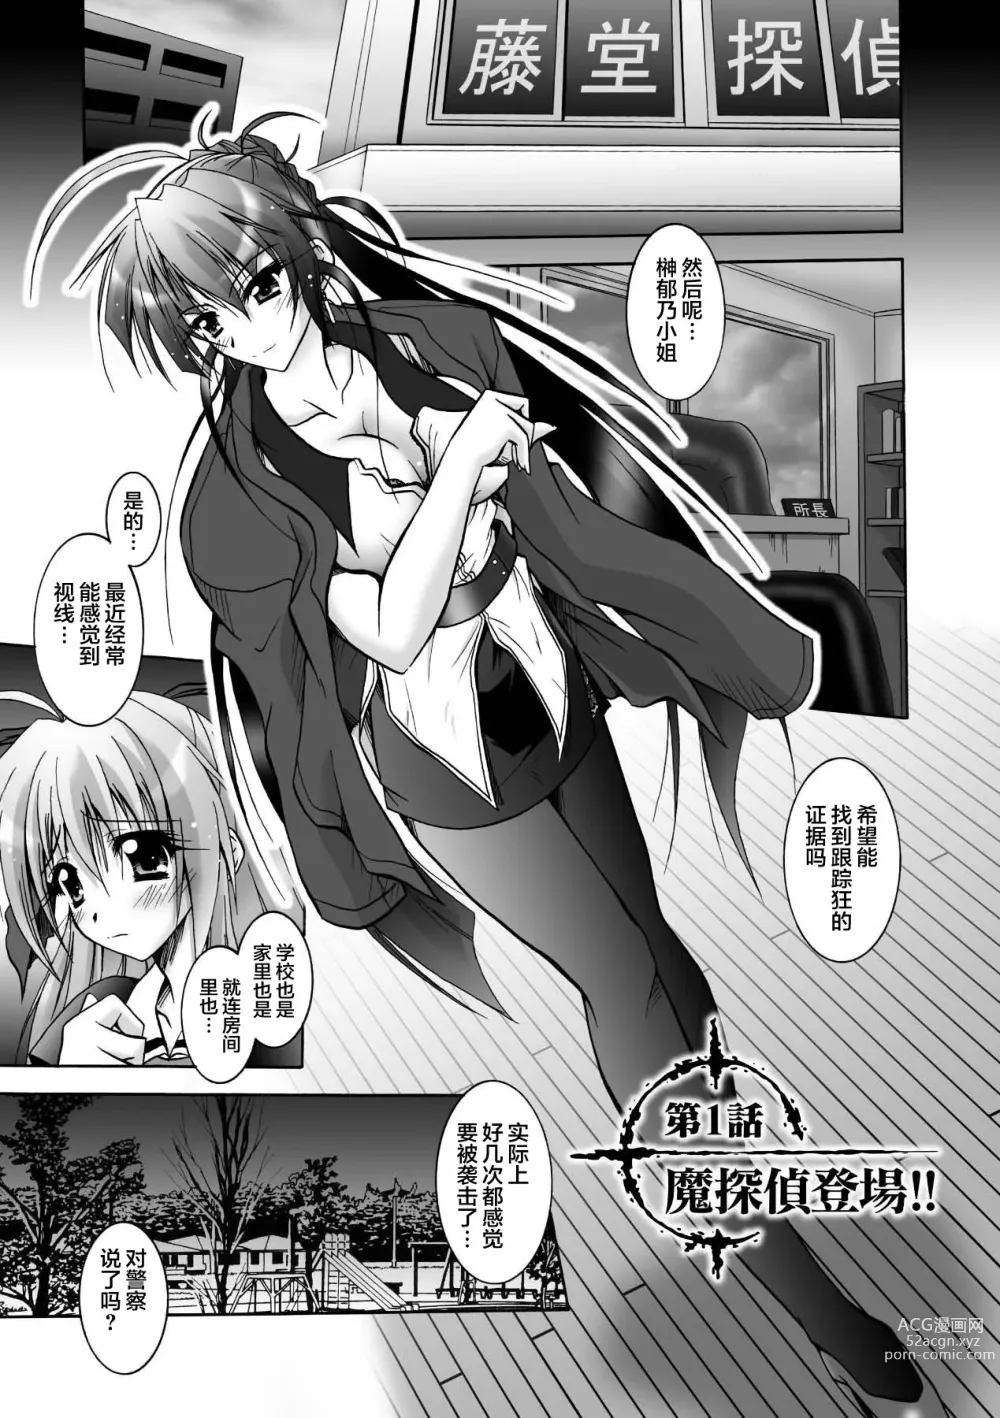 Page 5 of manga Matantei Toudou Shizuka no Inyou Jikenbo